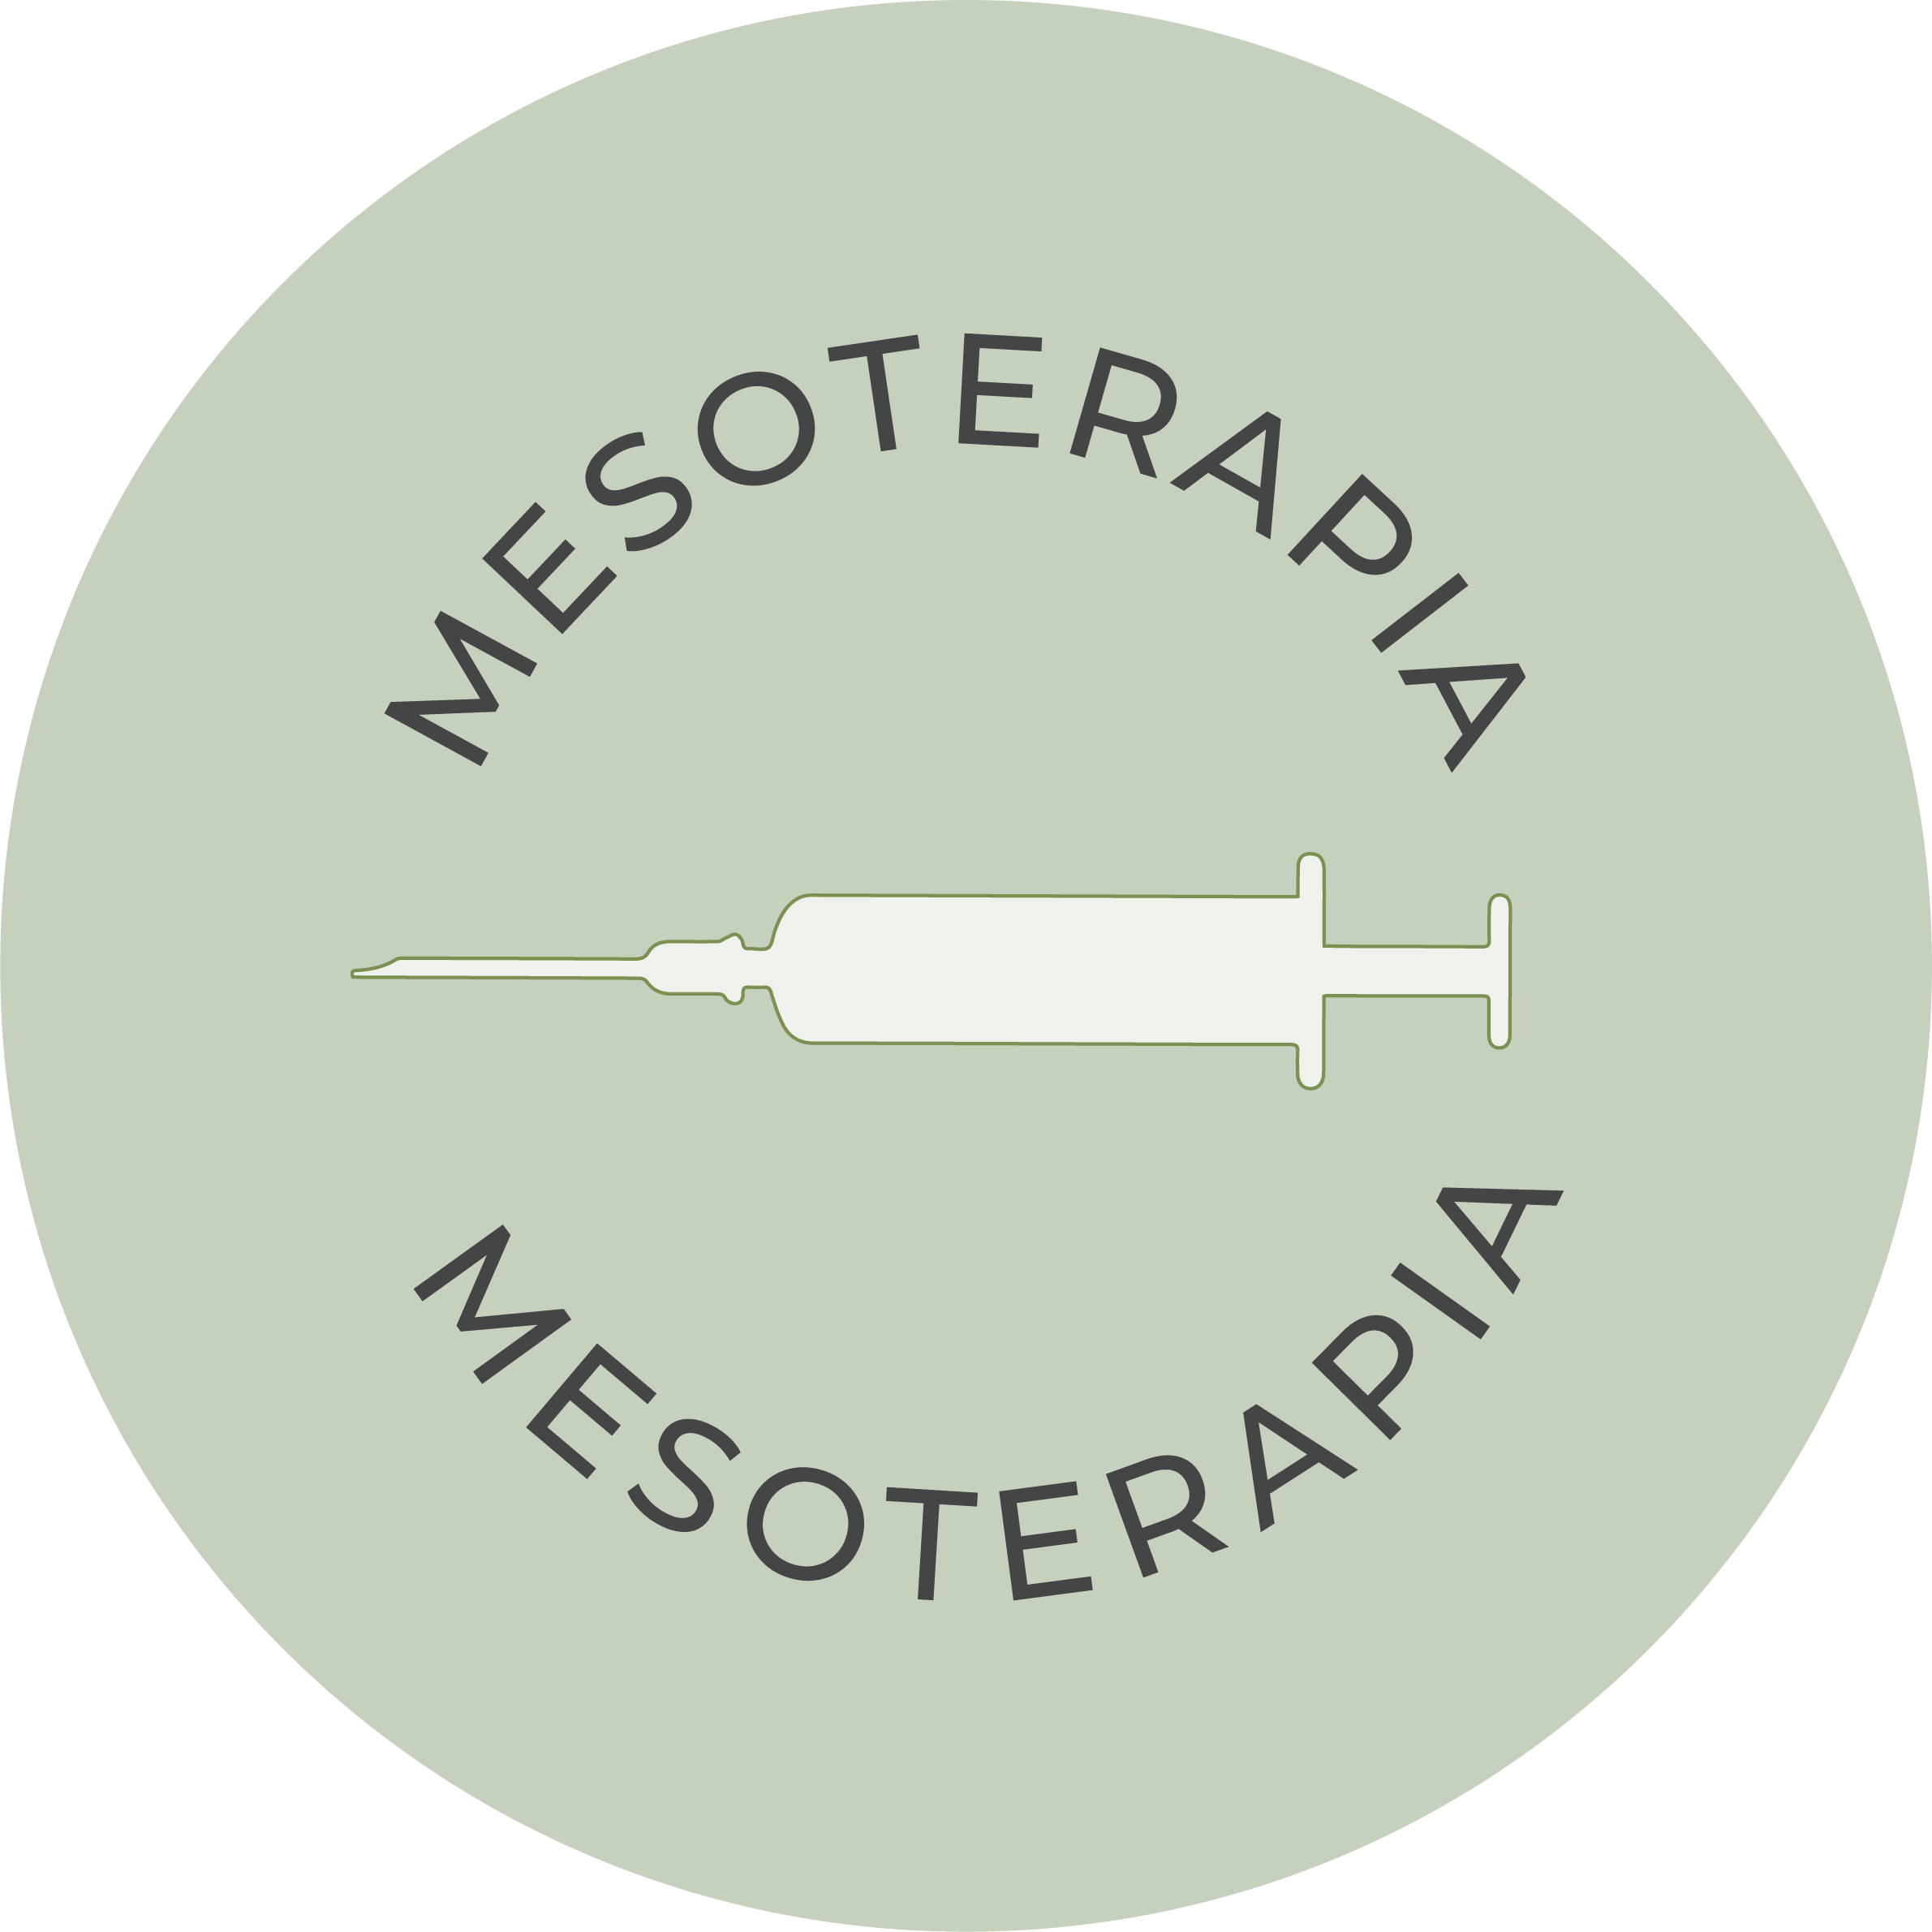 Mesoterapia